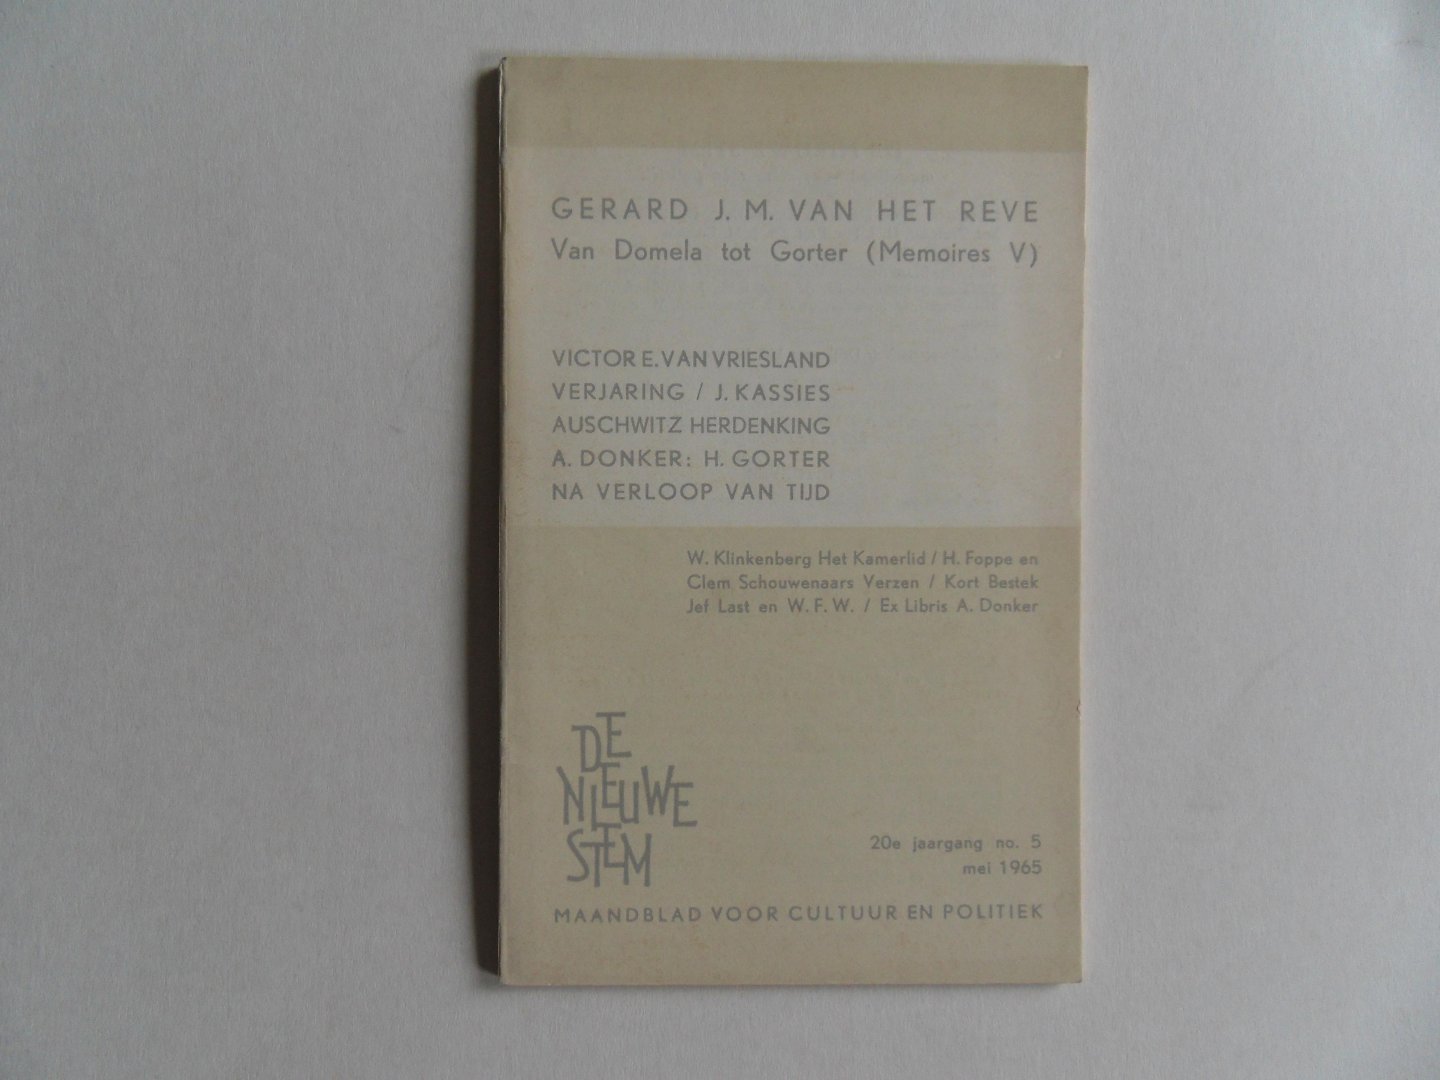 Reve, Gerard J.M. van het. - Van Domela tot Gorter ( Memoires V) in de Nieuwe Stem 20e jaargang no. 5, mei 1965.